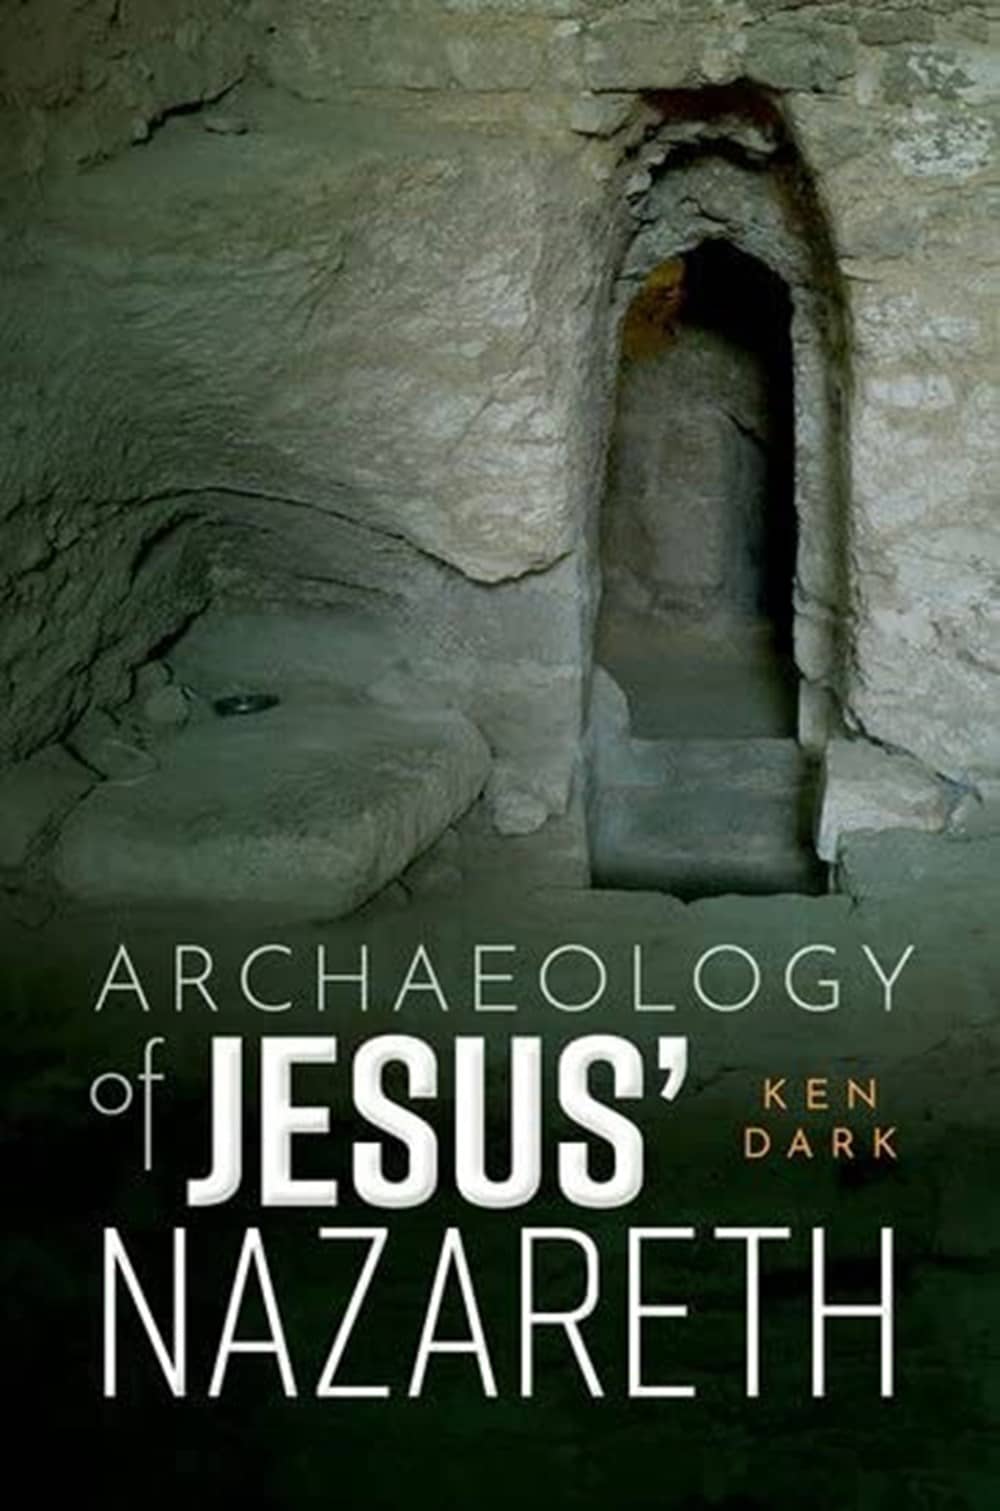 Archaeology of Jesus’ Nazareth, libro de 2023 del arqueólogo inglés Ken Dark